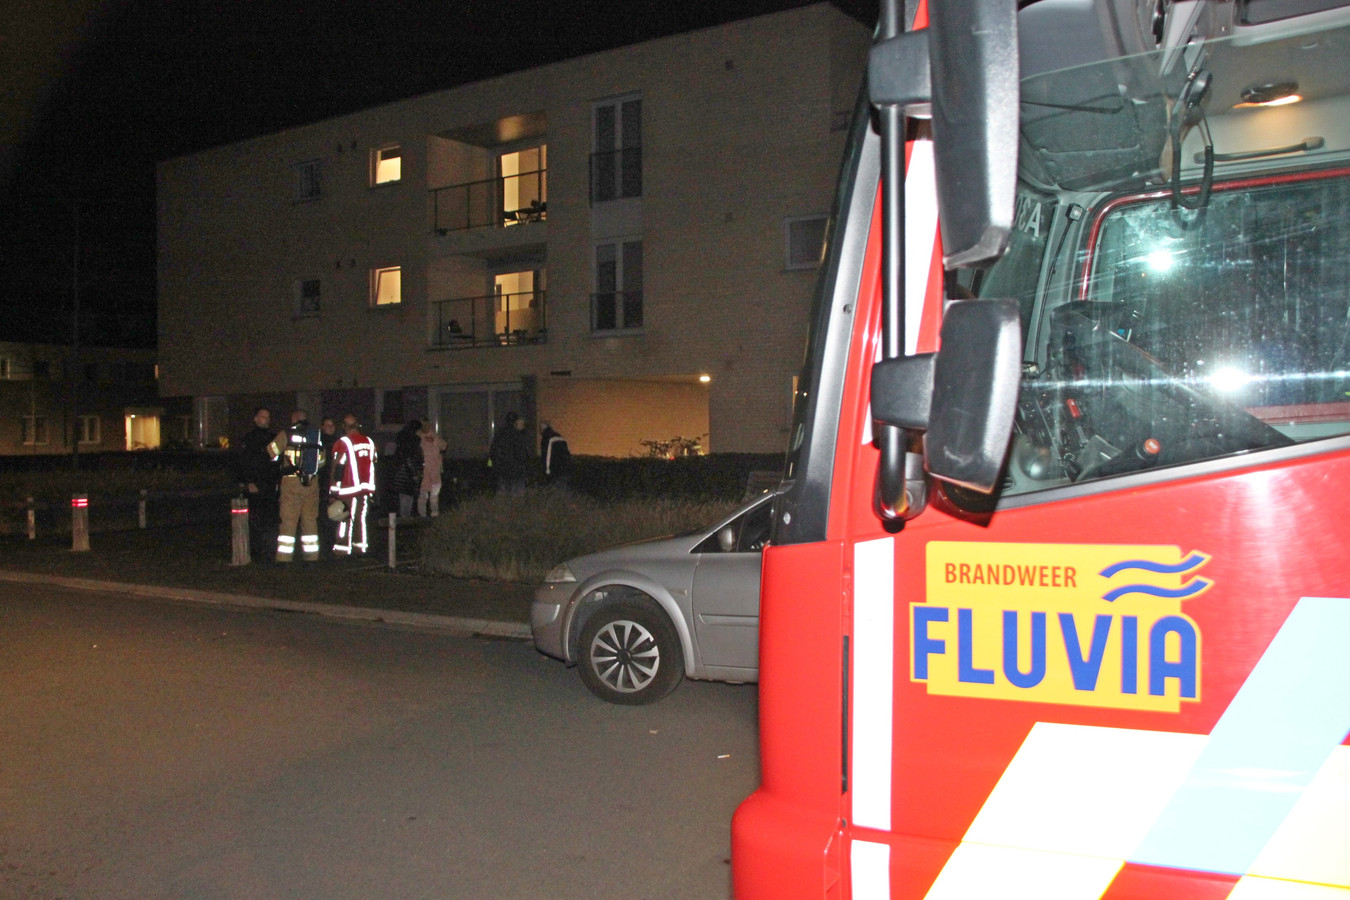 De brandweer van de zone Fluvia bij het appartementsgebouw.